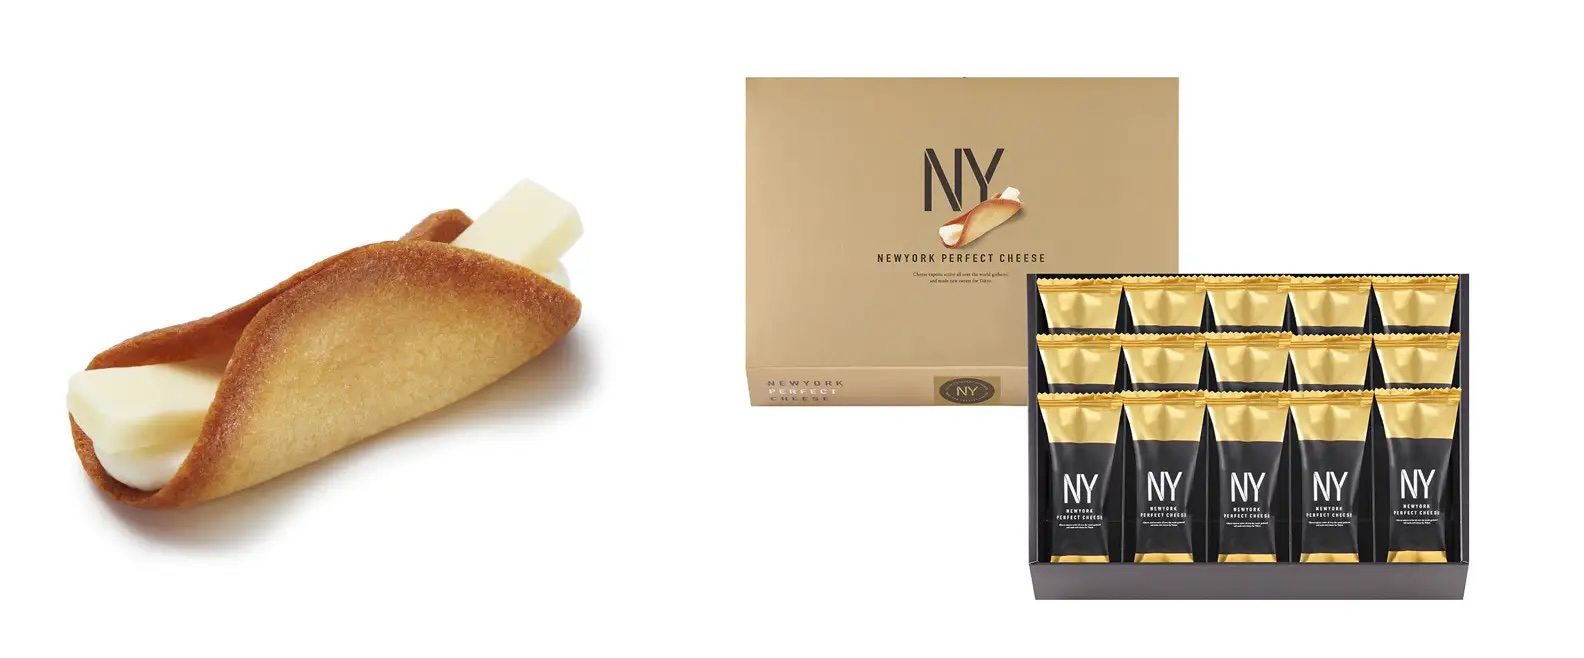 日本東京N.Y Perfect Cheese 奶油起司餅乾提袋可另外加購| 所有商品